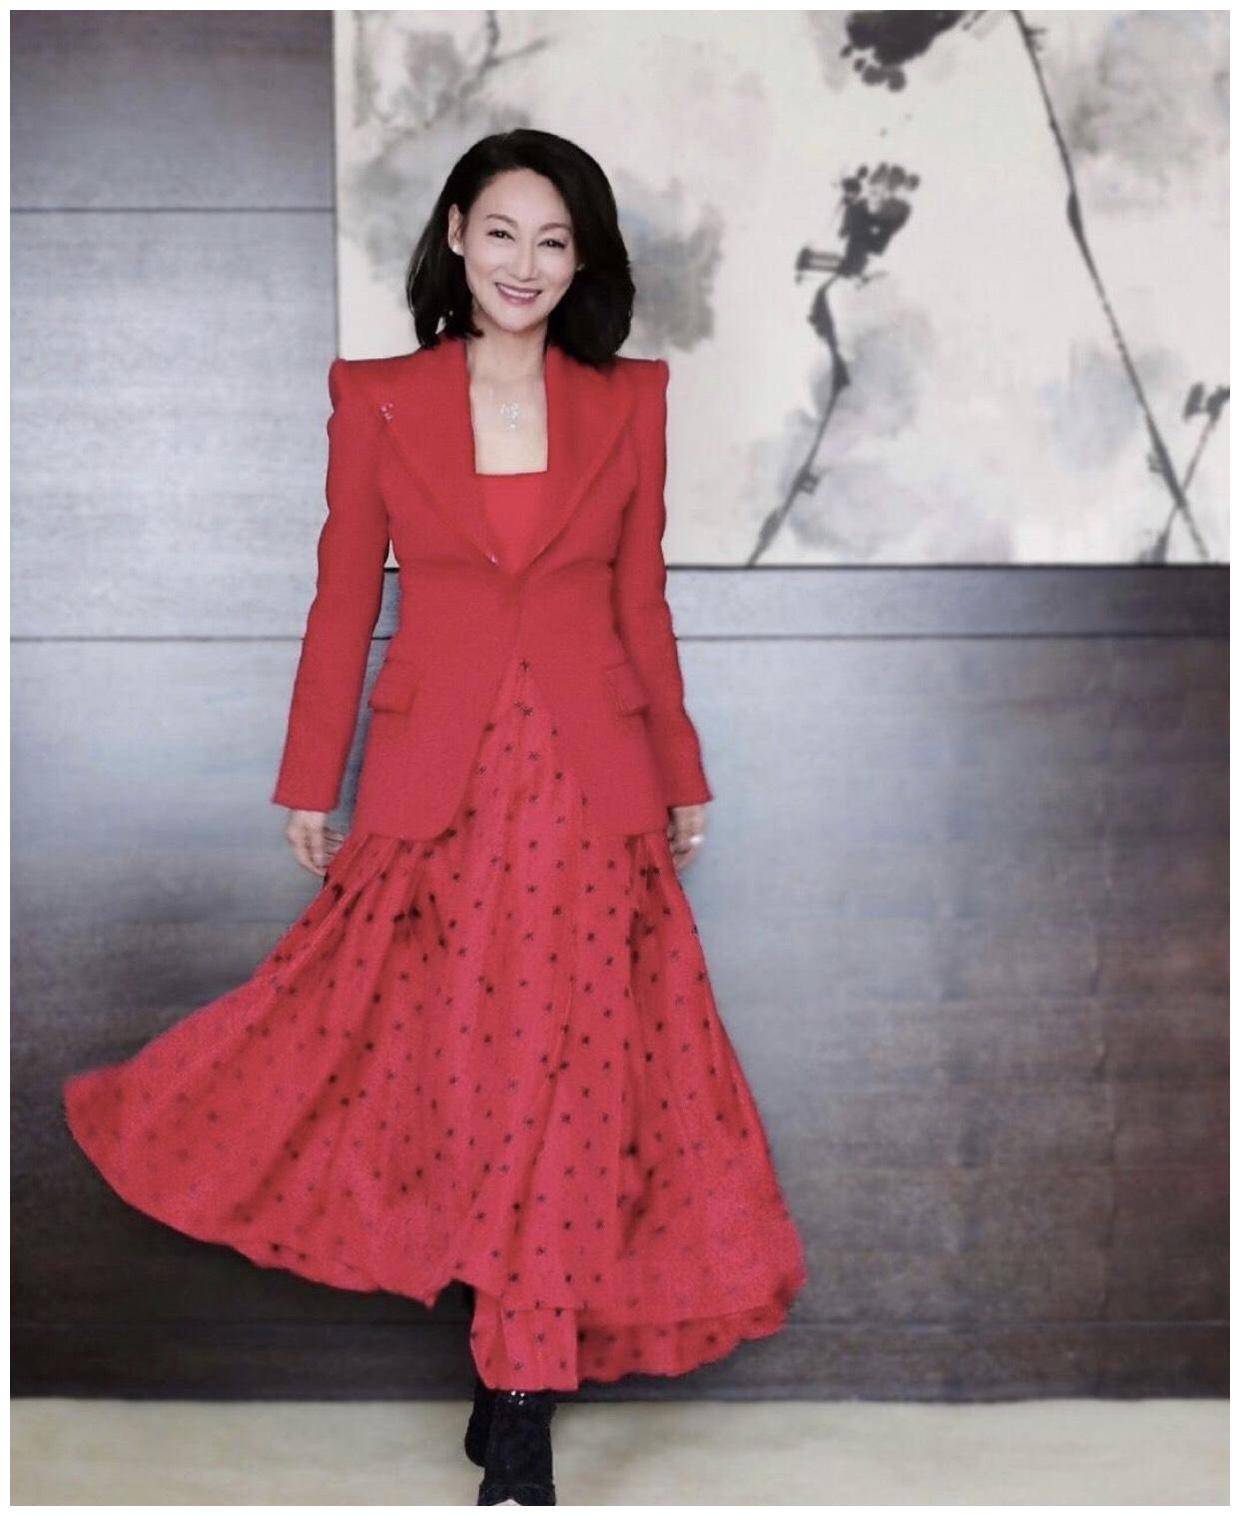 惠英红现身活动,波波头短发搭配大红色西服 半身裙,穿出高级感